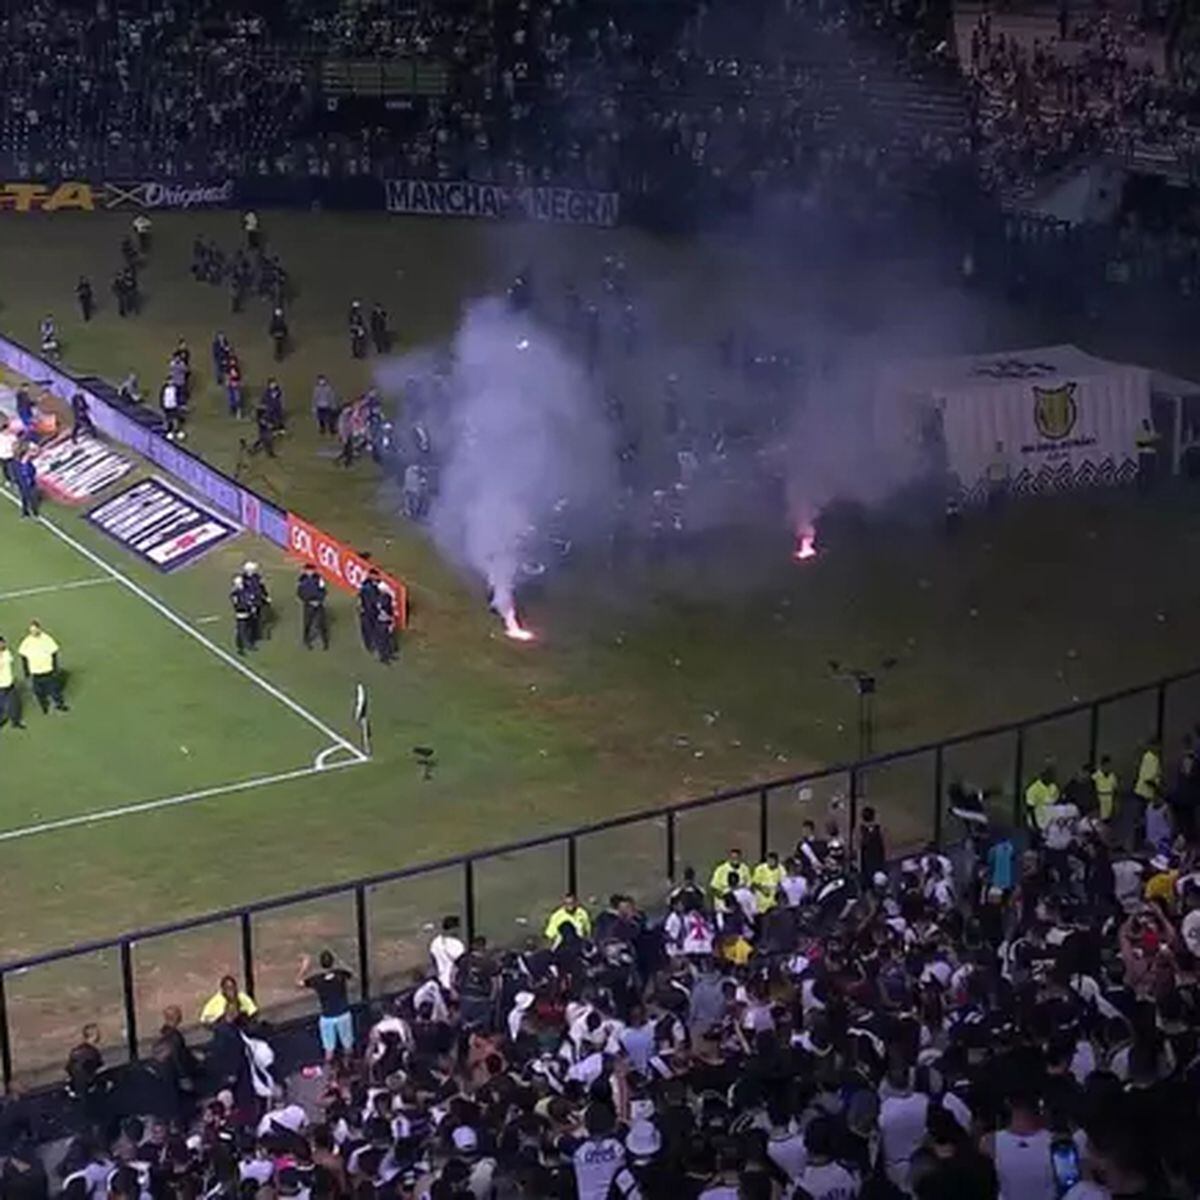 Por fogos de artifício contra o Boca Juniors, River Plate é punido